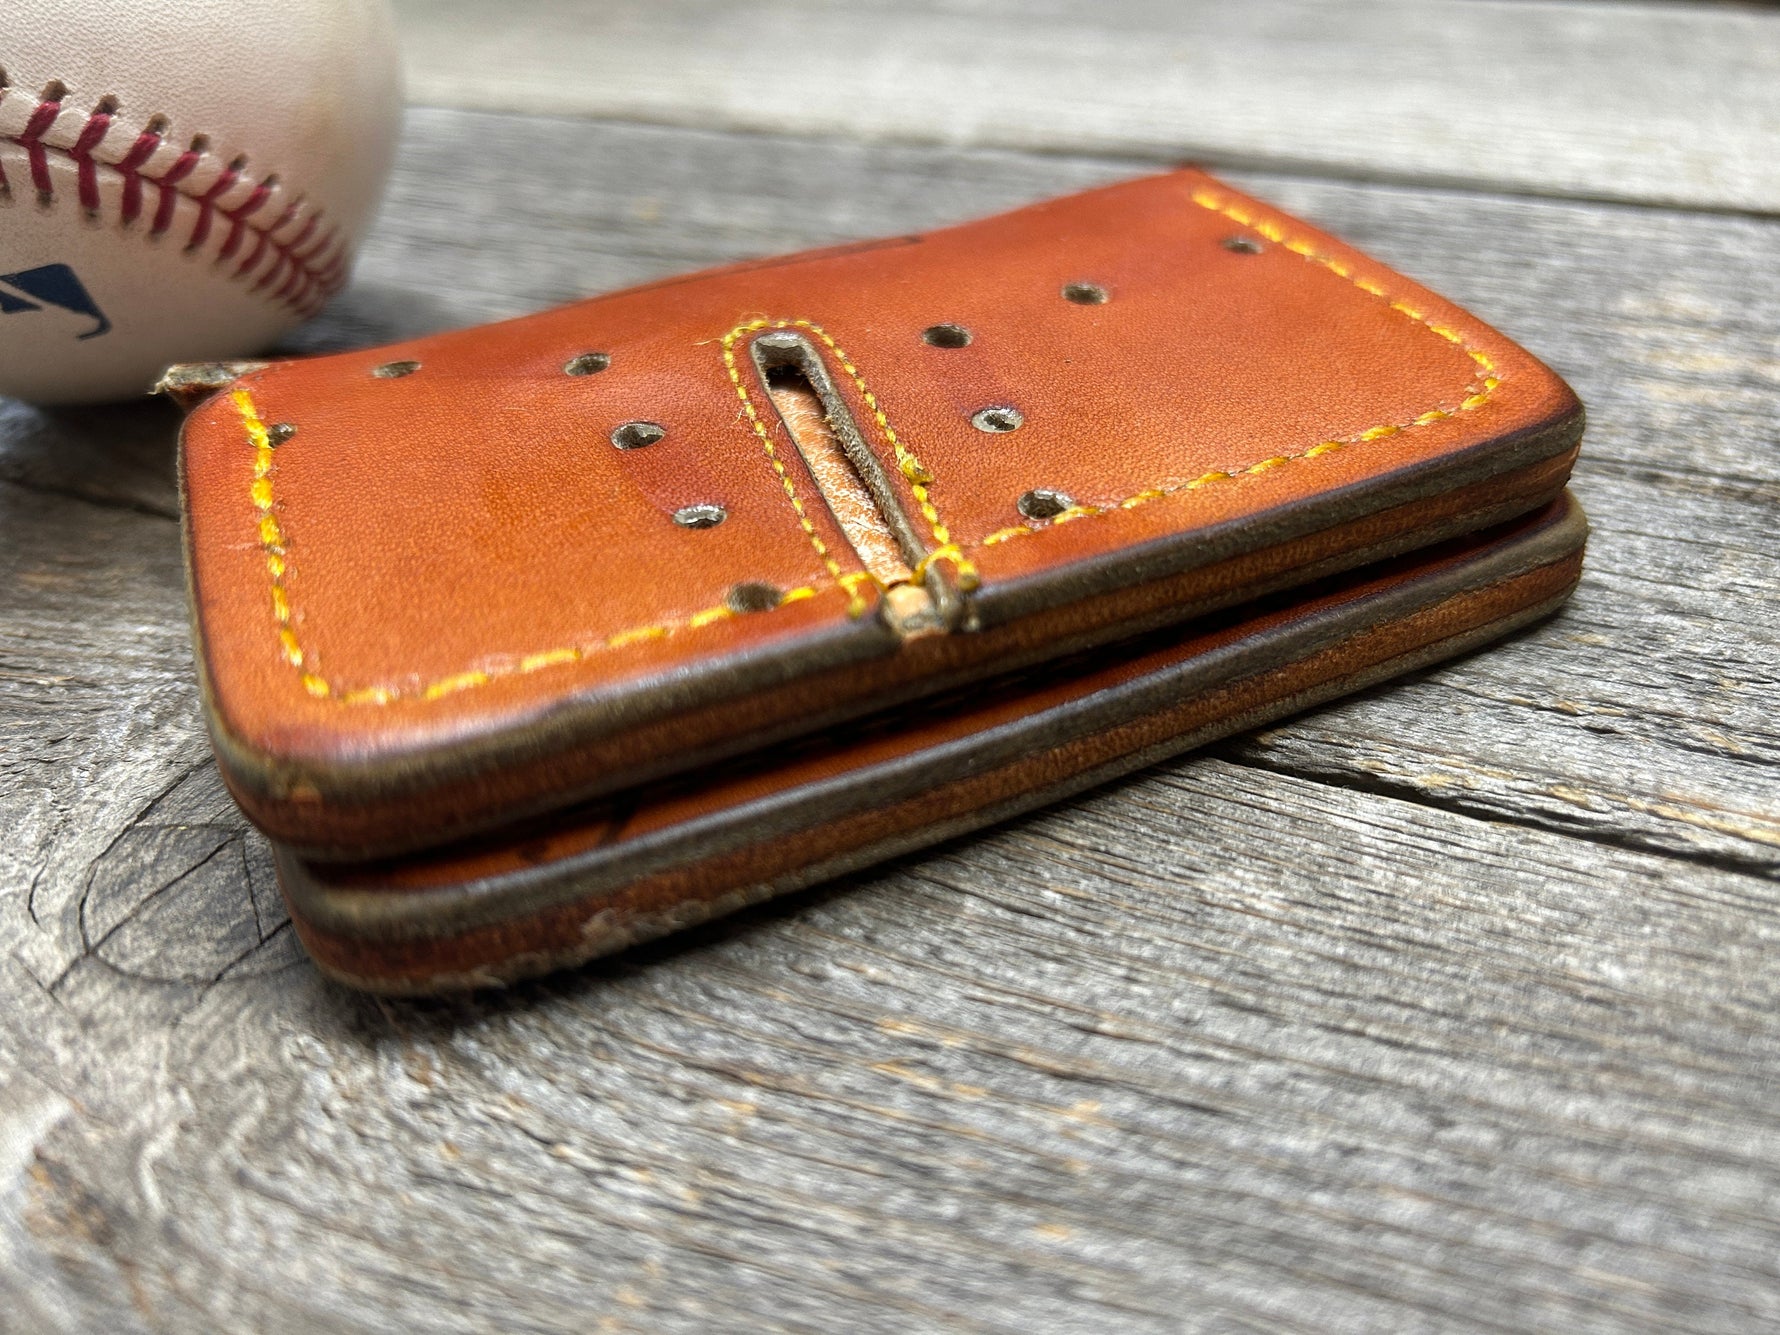 Vintage Spalding Ultra Baseball Glove Wallet!